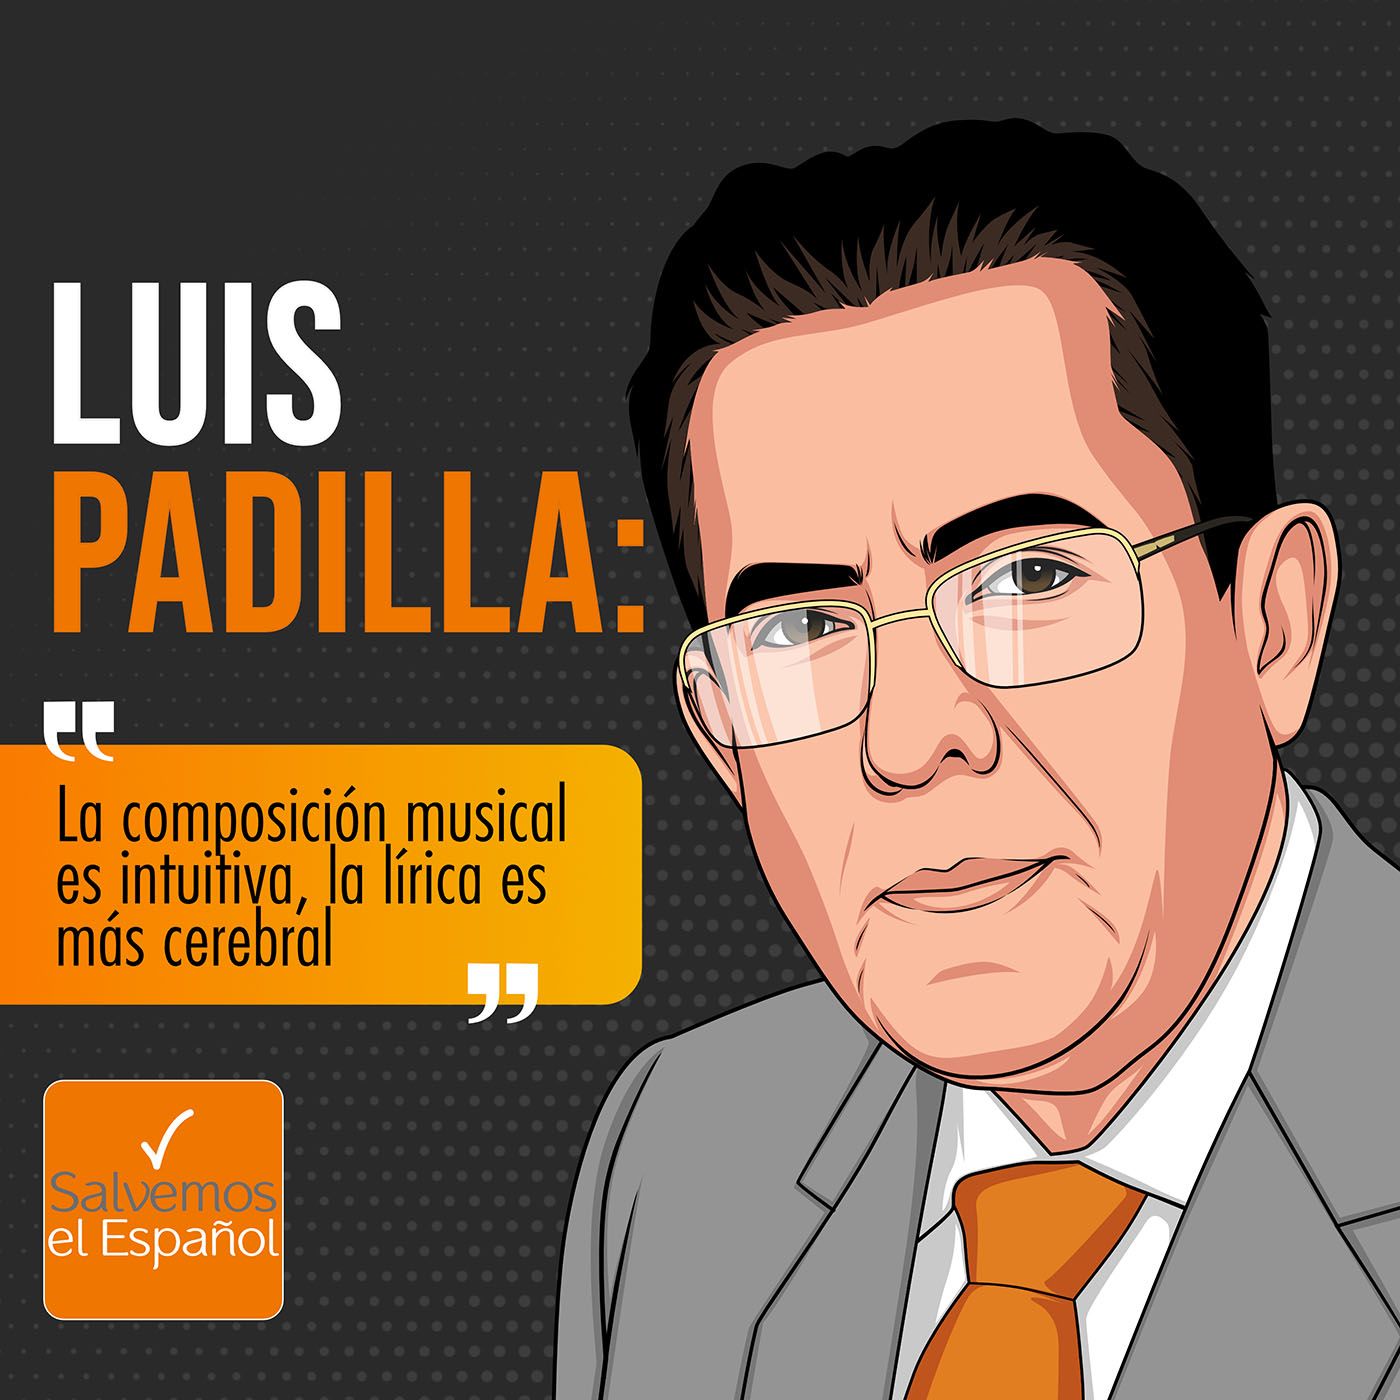 Luis Padilla: “La composición musical es intuitiva, la lírica es más cerebral” - T01E13